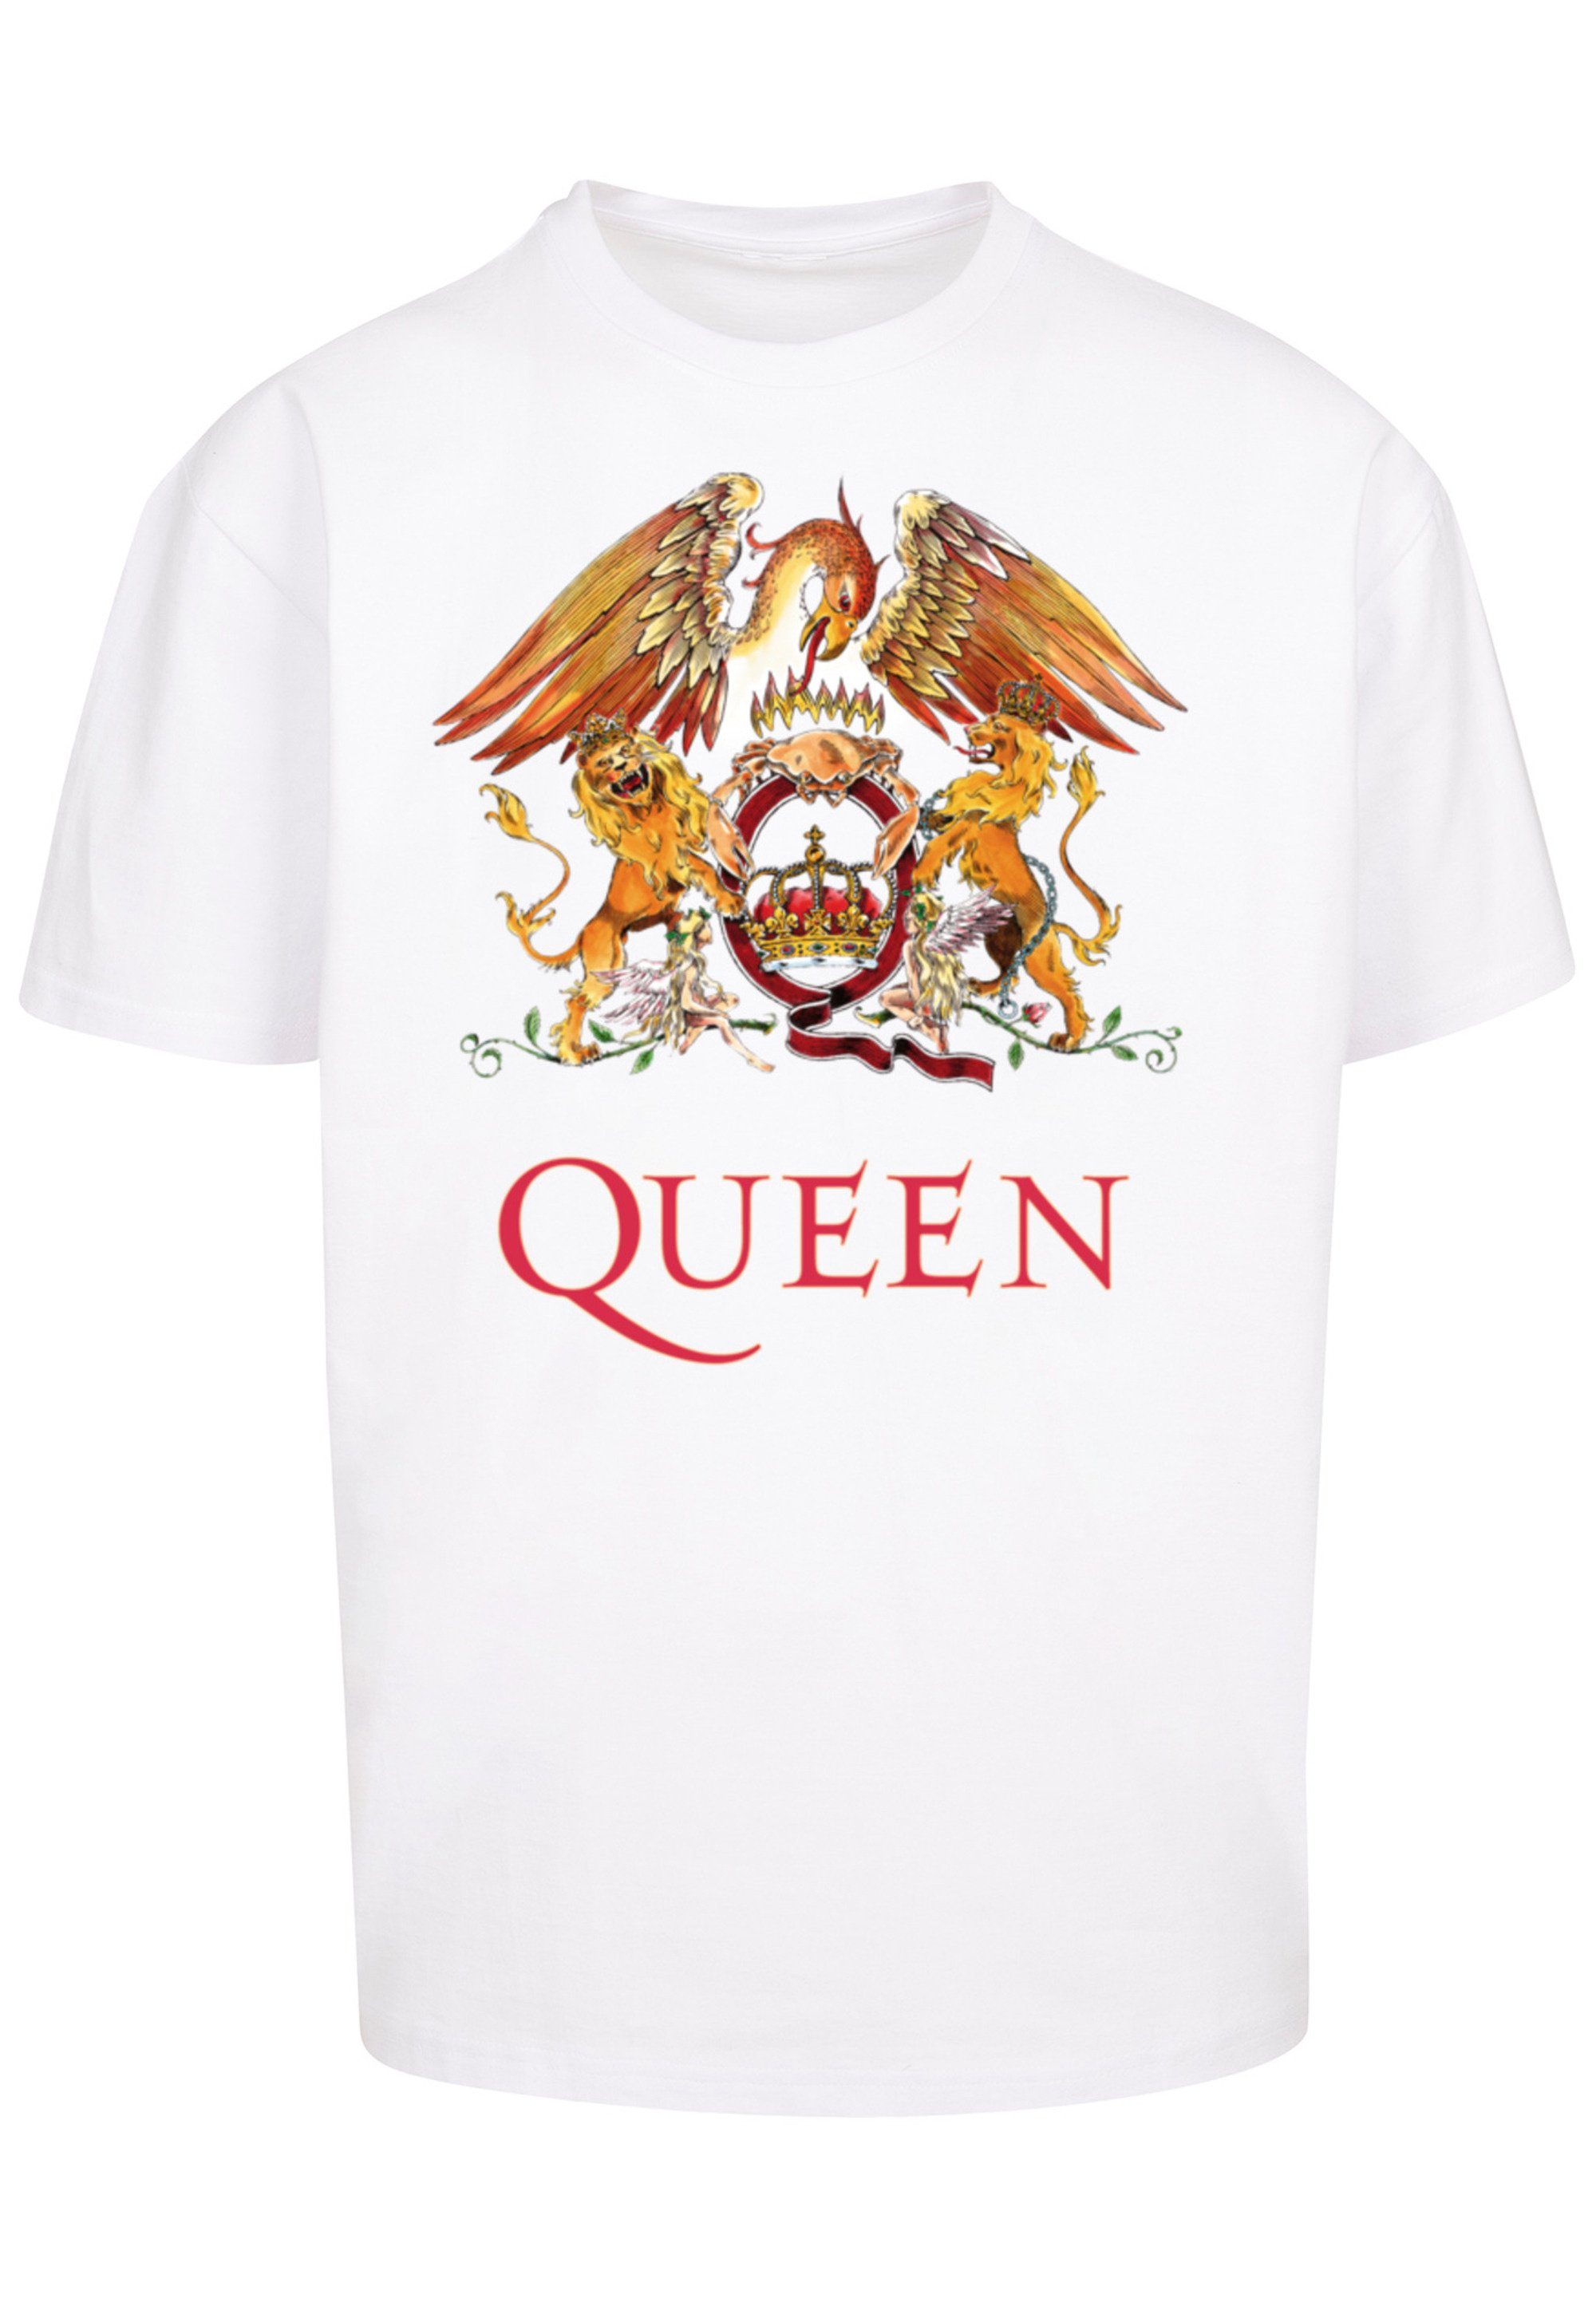 Black T-Shirt weiß Print Crest Rockband Classic F4NT4STIC Queen